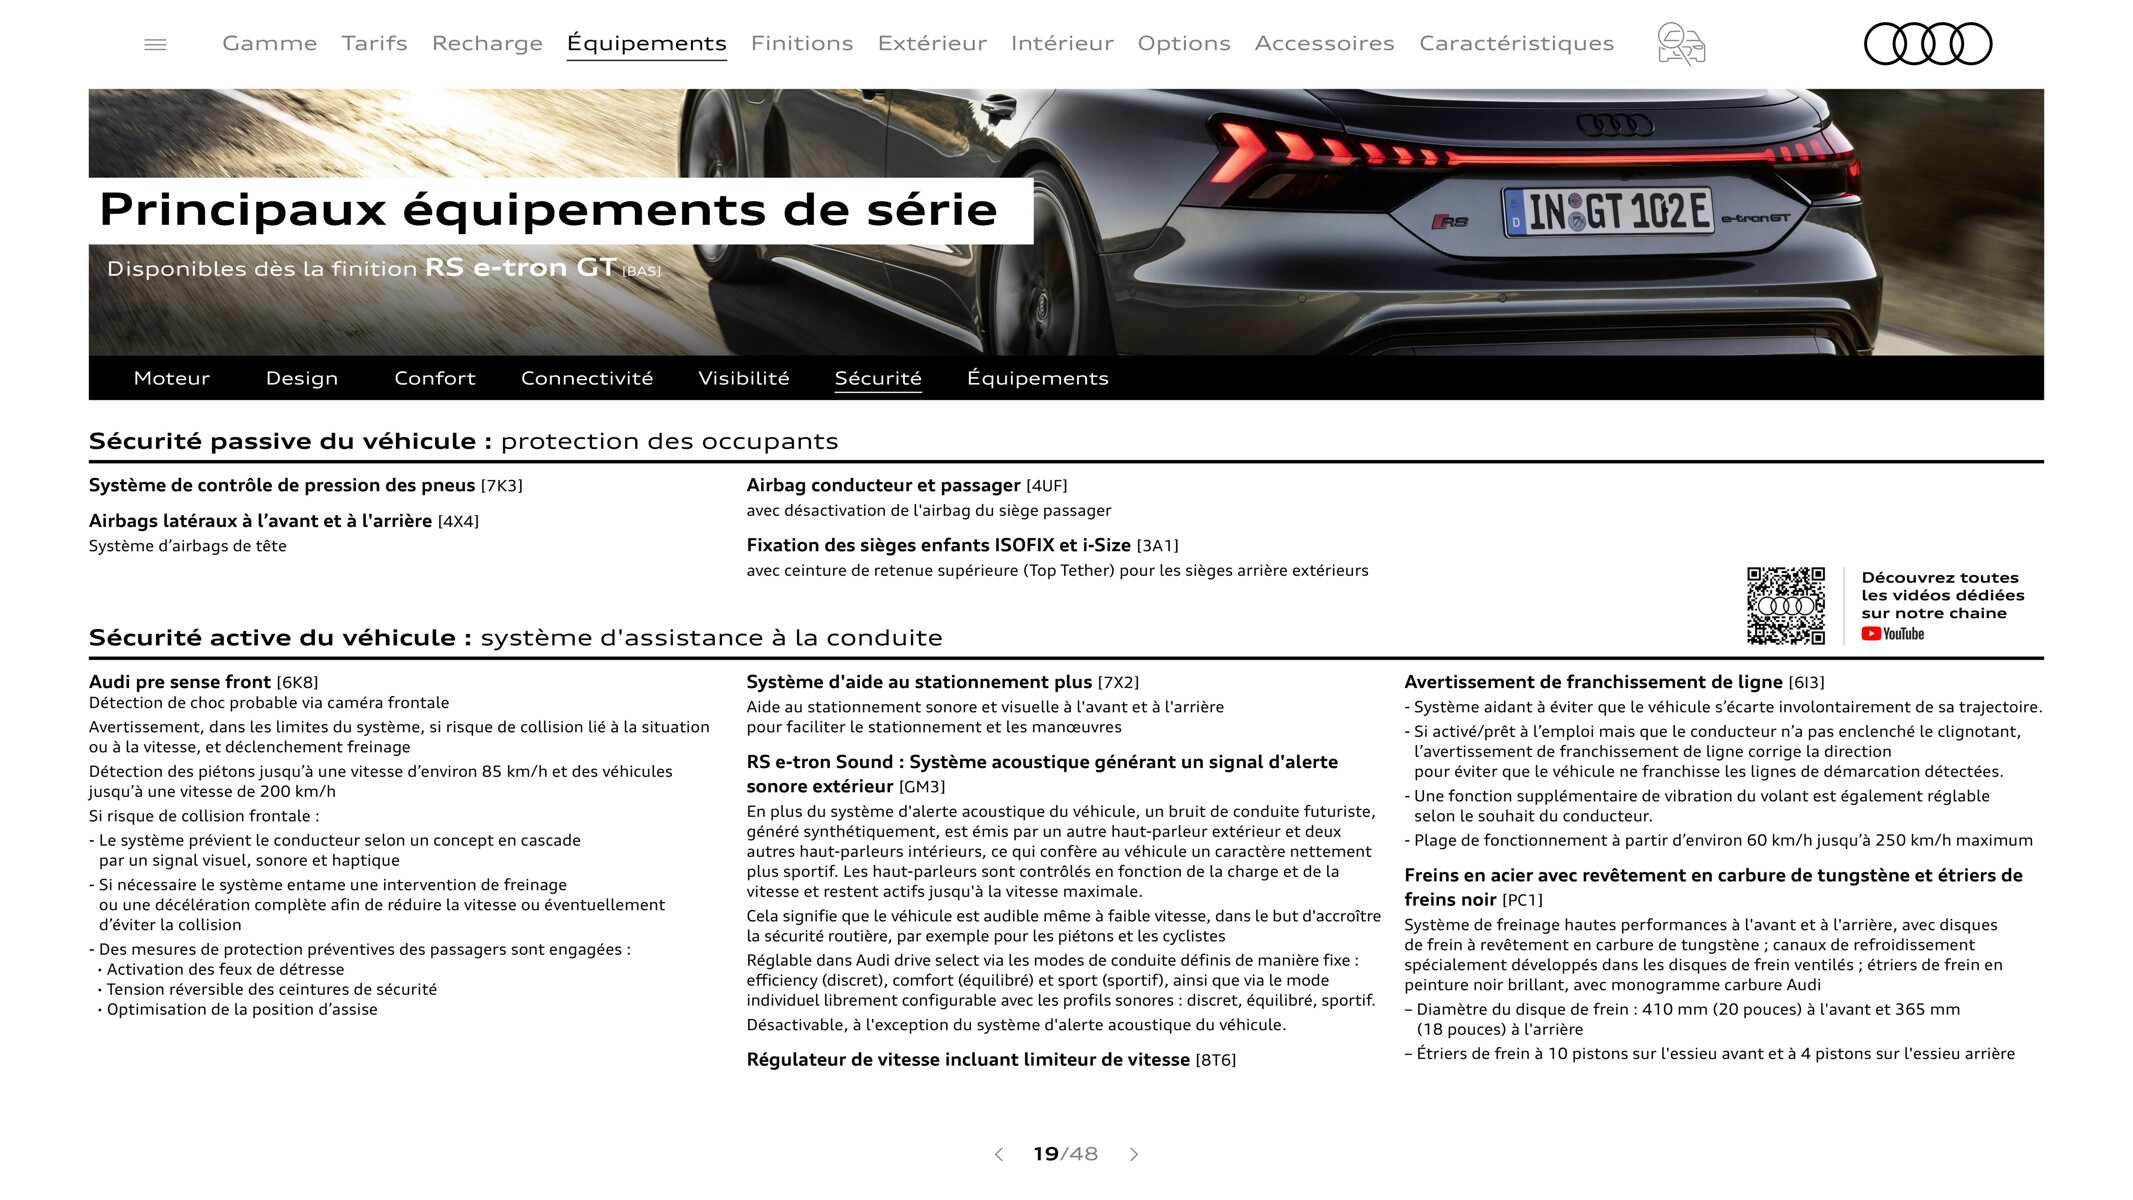 Catalogue RS e-tron GT-, page 00019